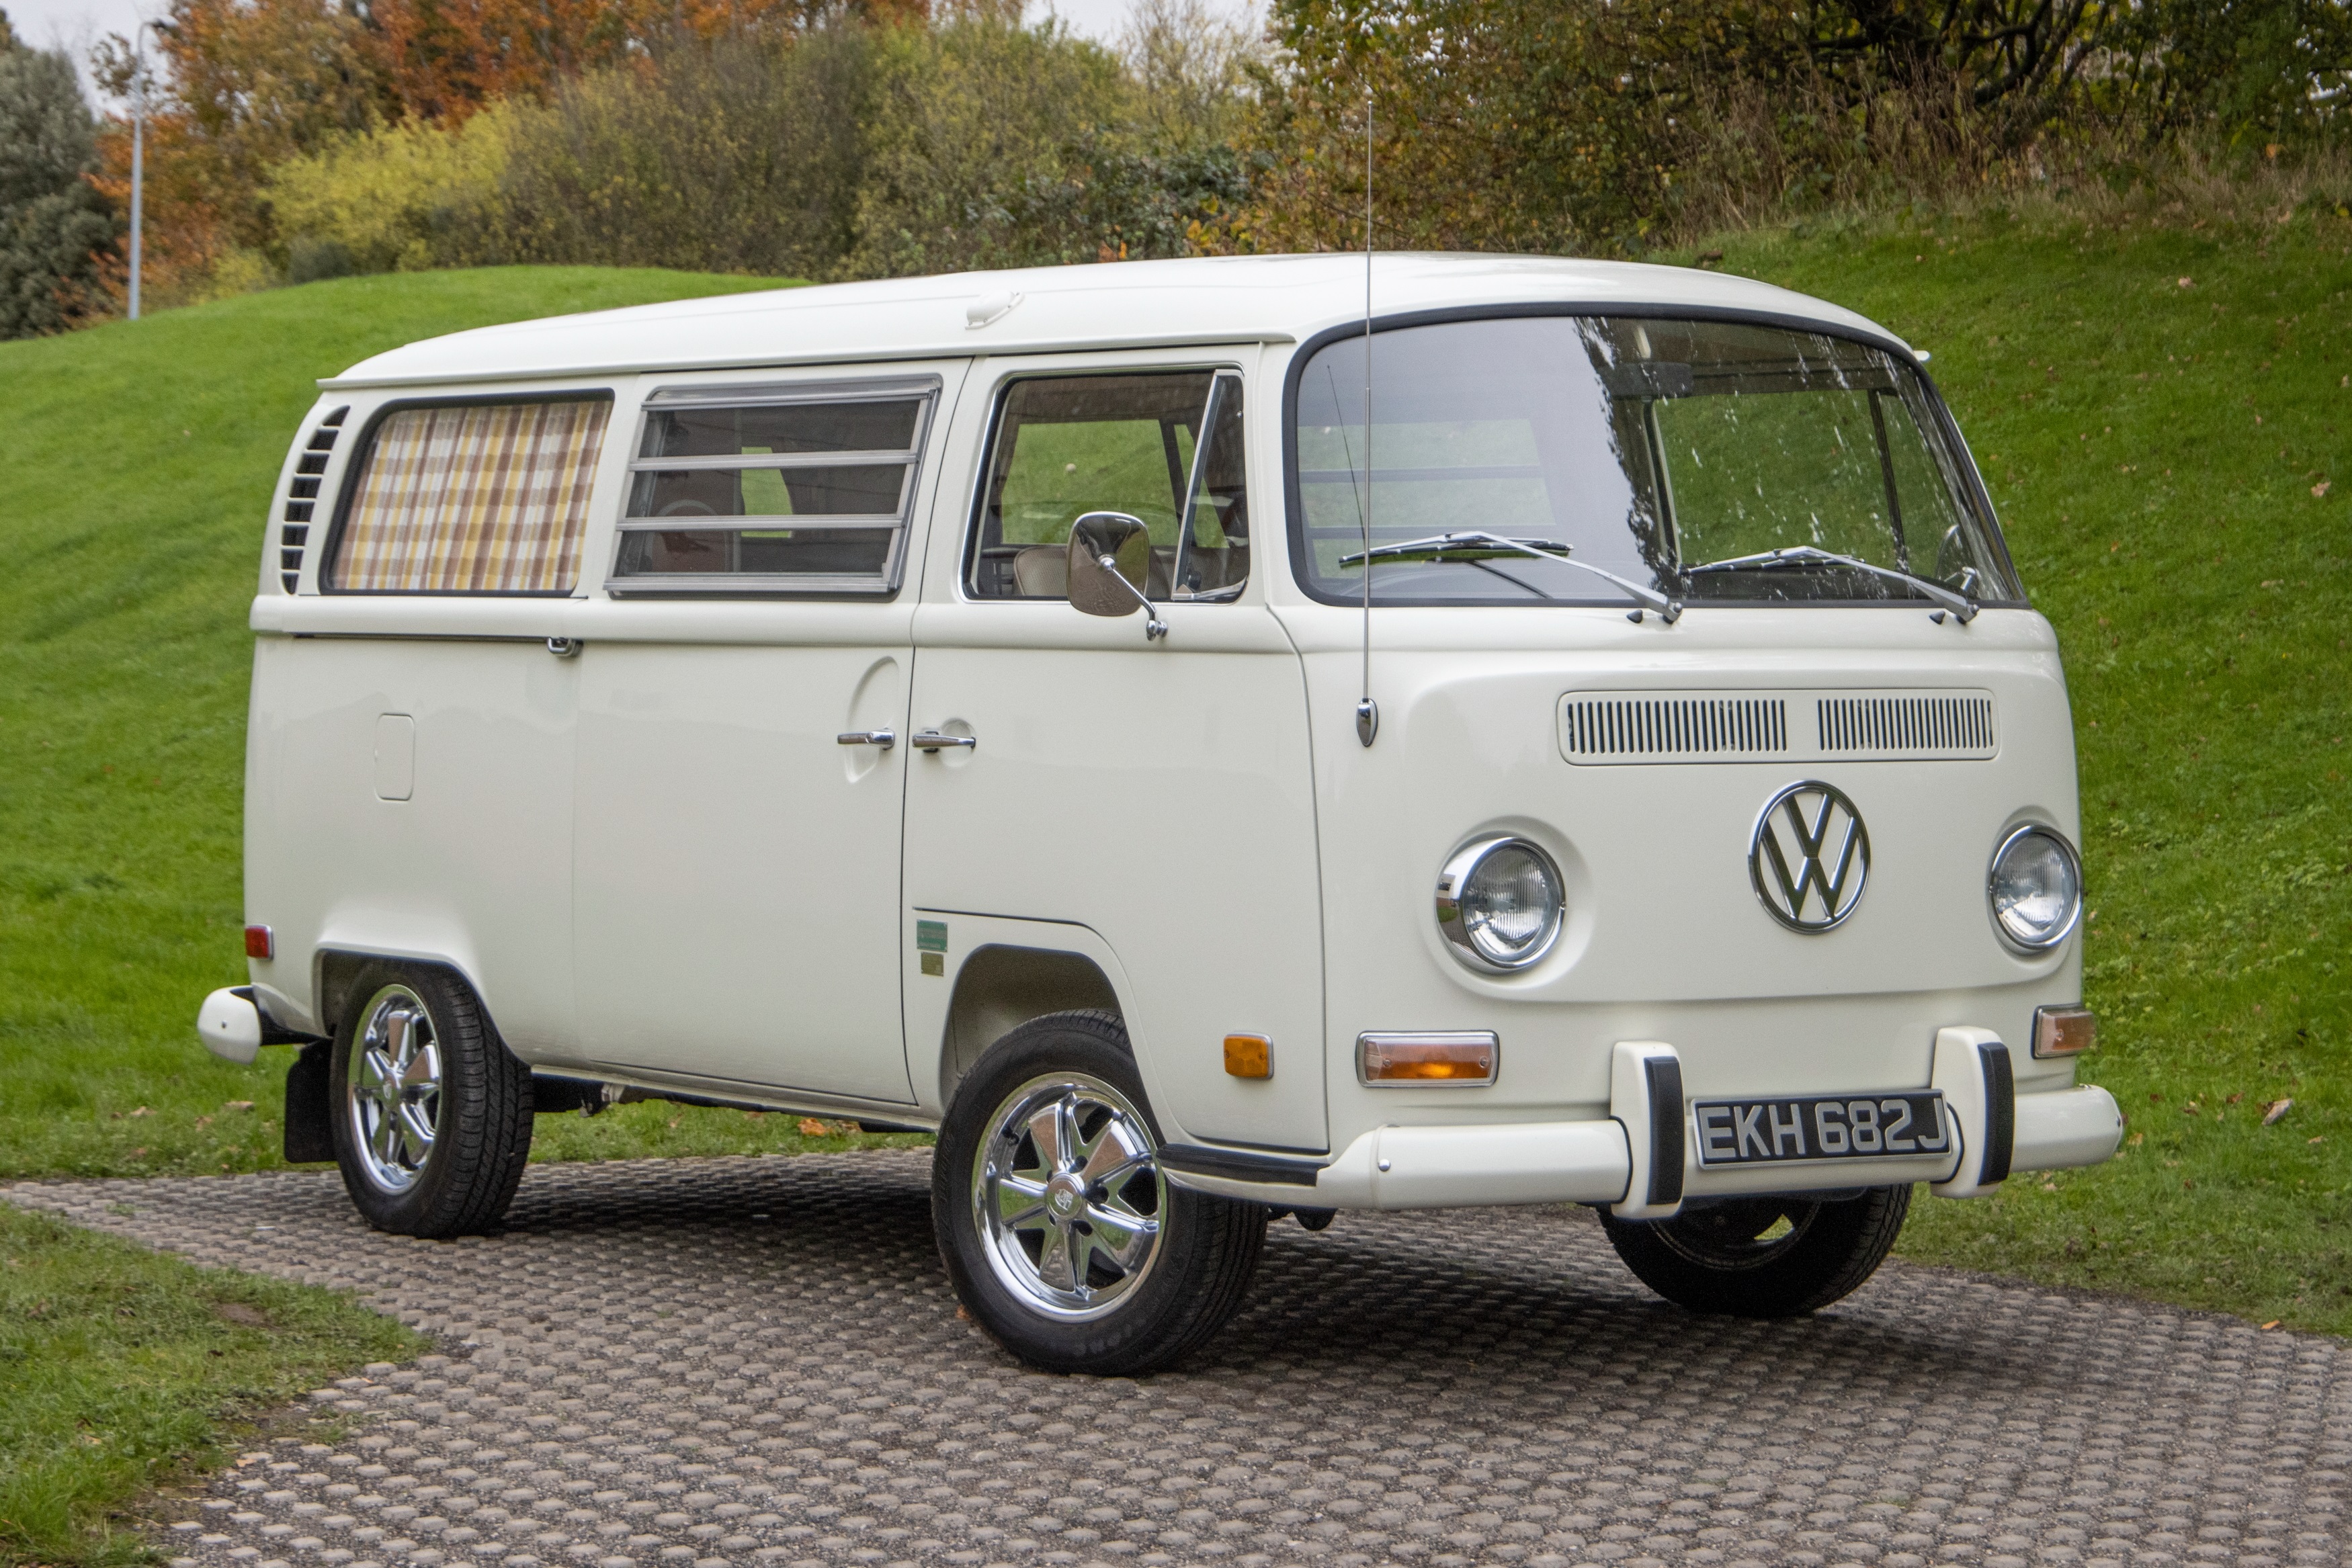 Westfalia's new VW camper van is a full-grown MAN